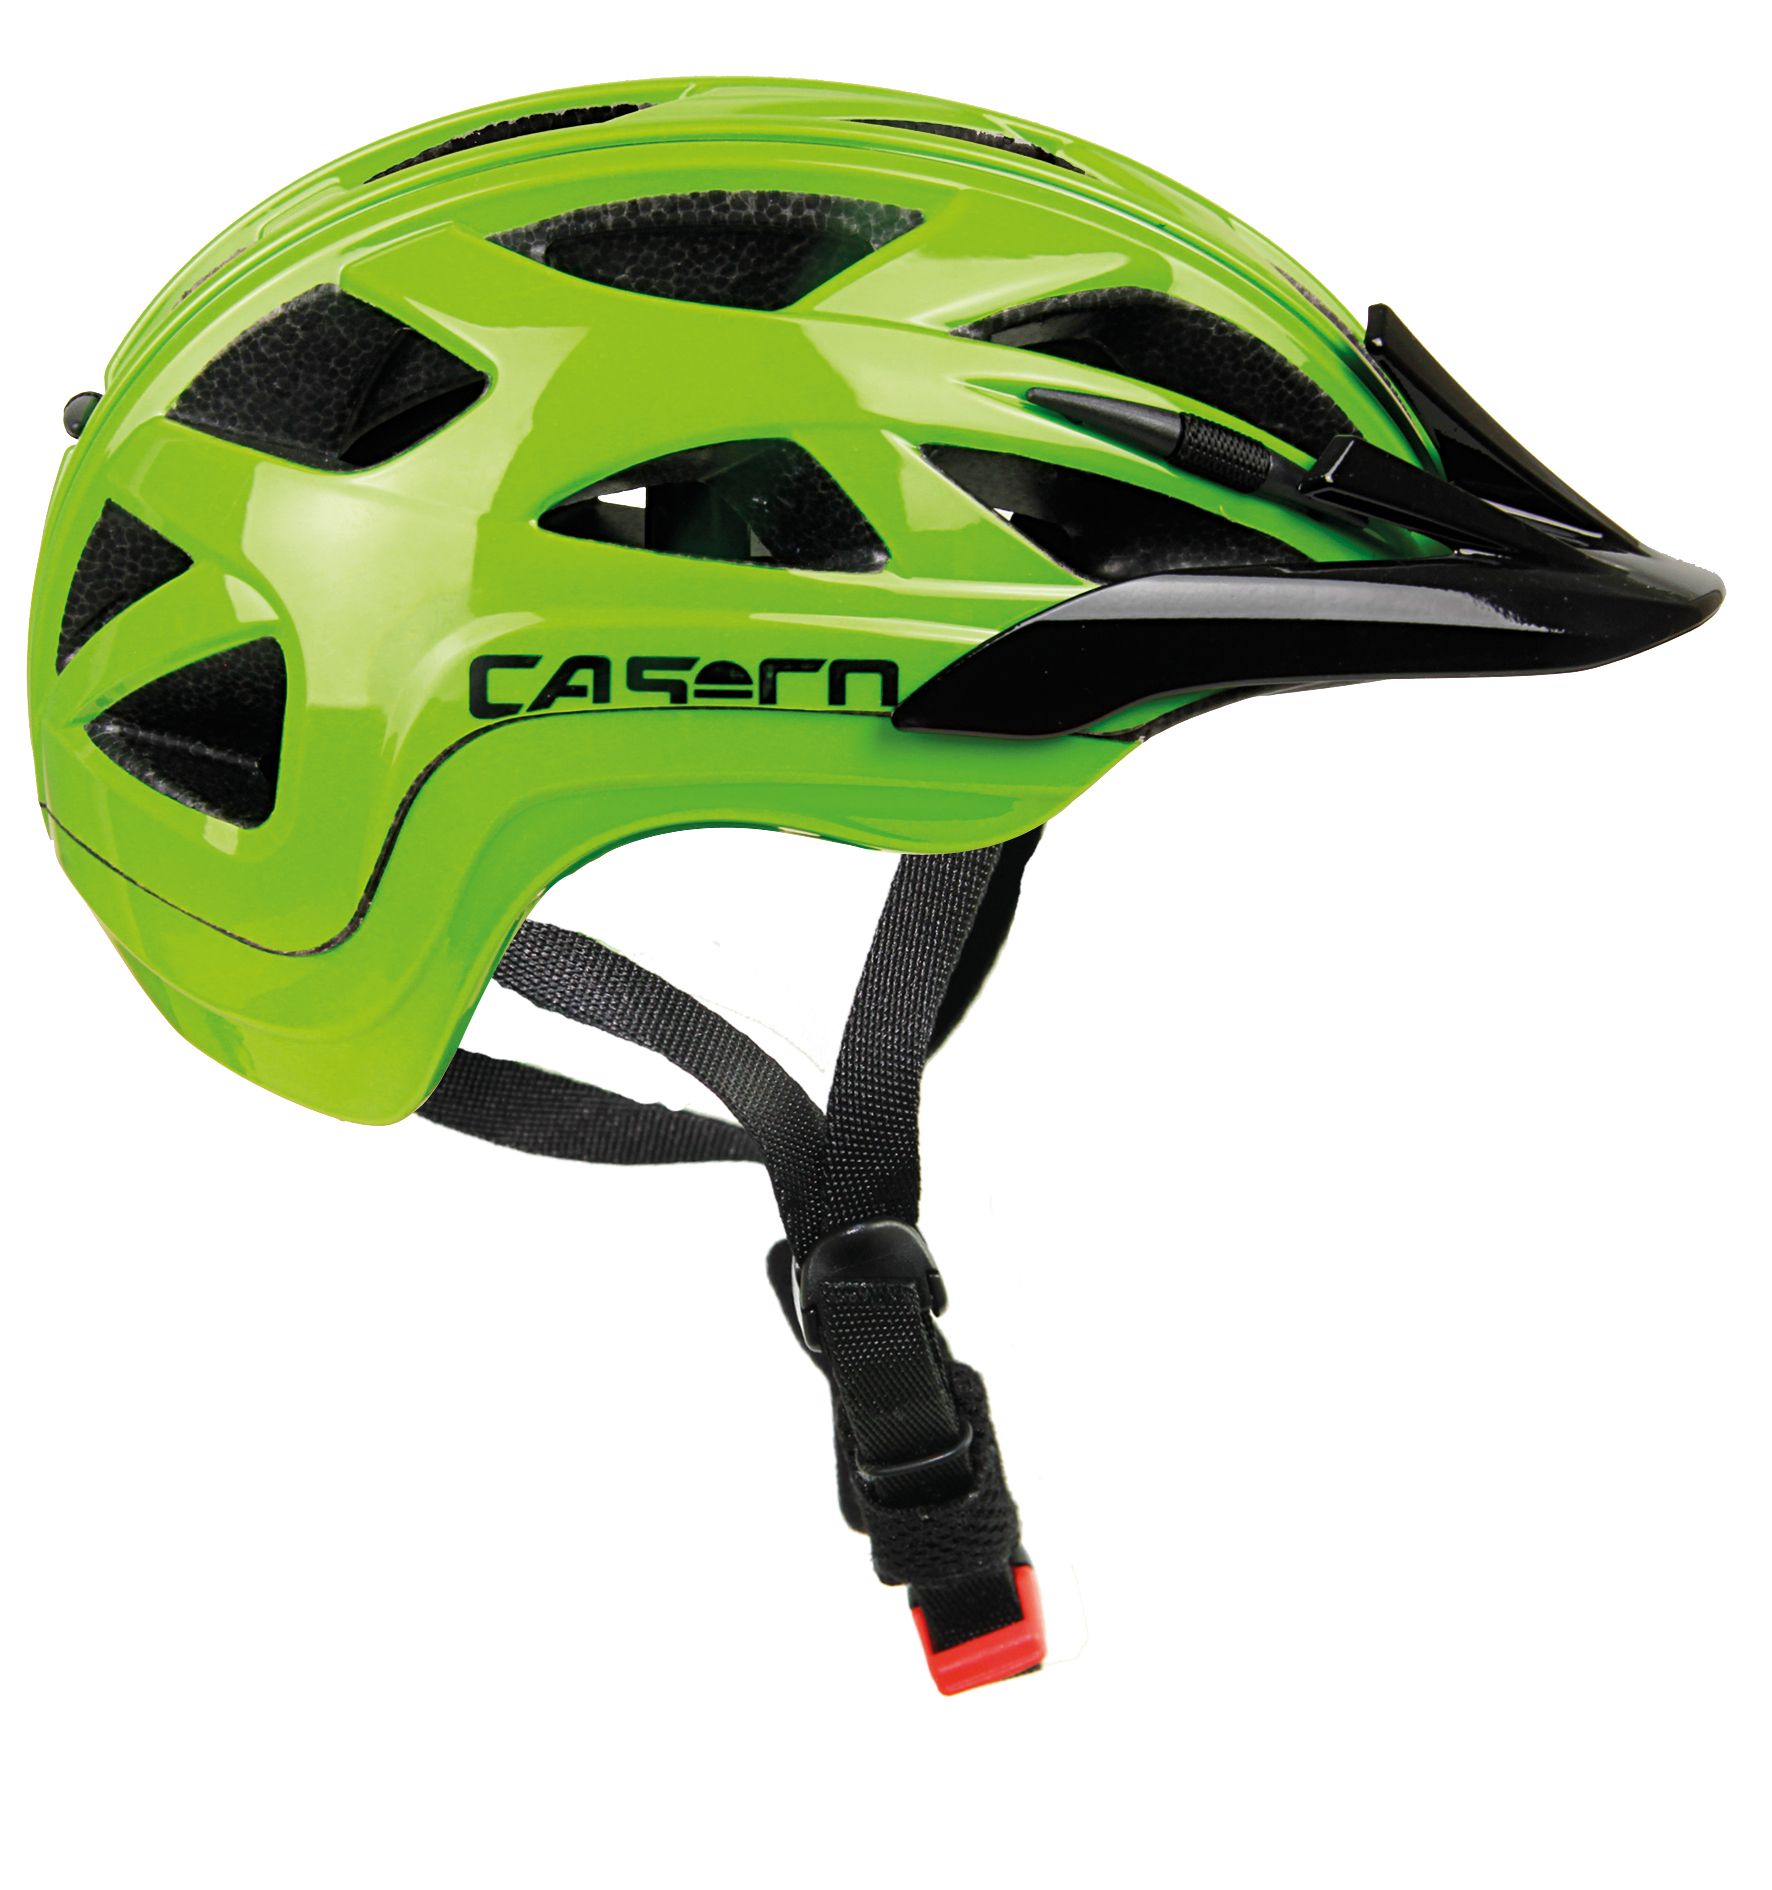 Casco ACTIV 2 JUNIOR, otroška kolesarska čelada, zelena | Intersport